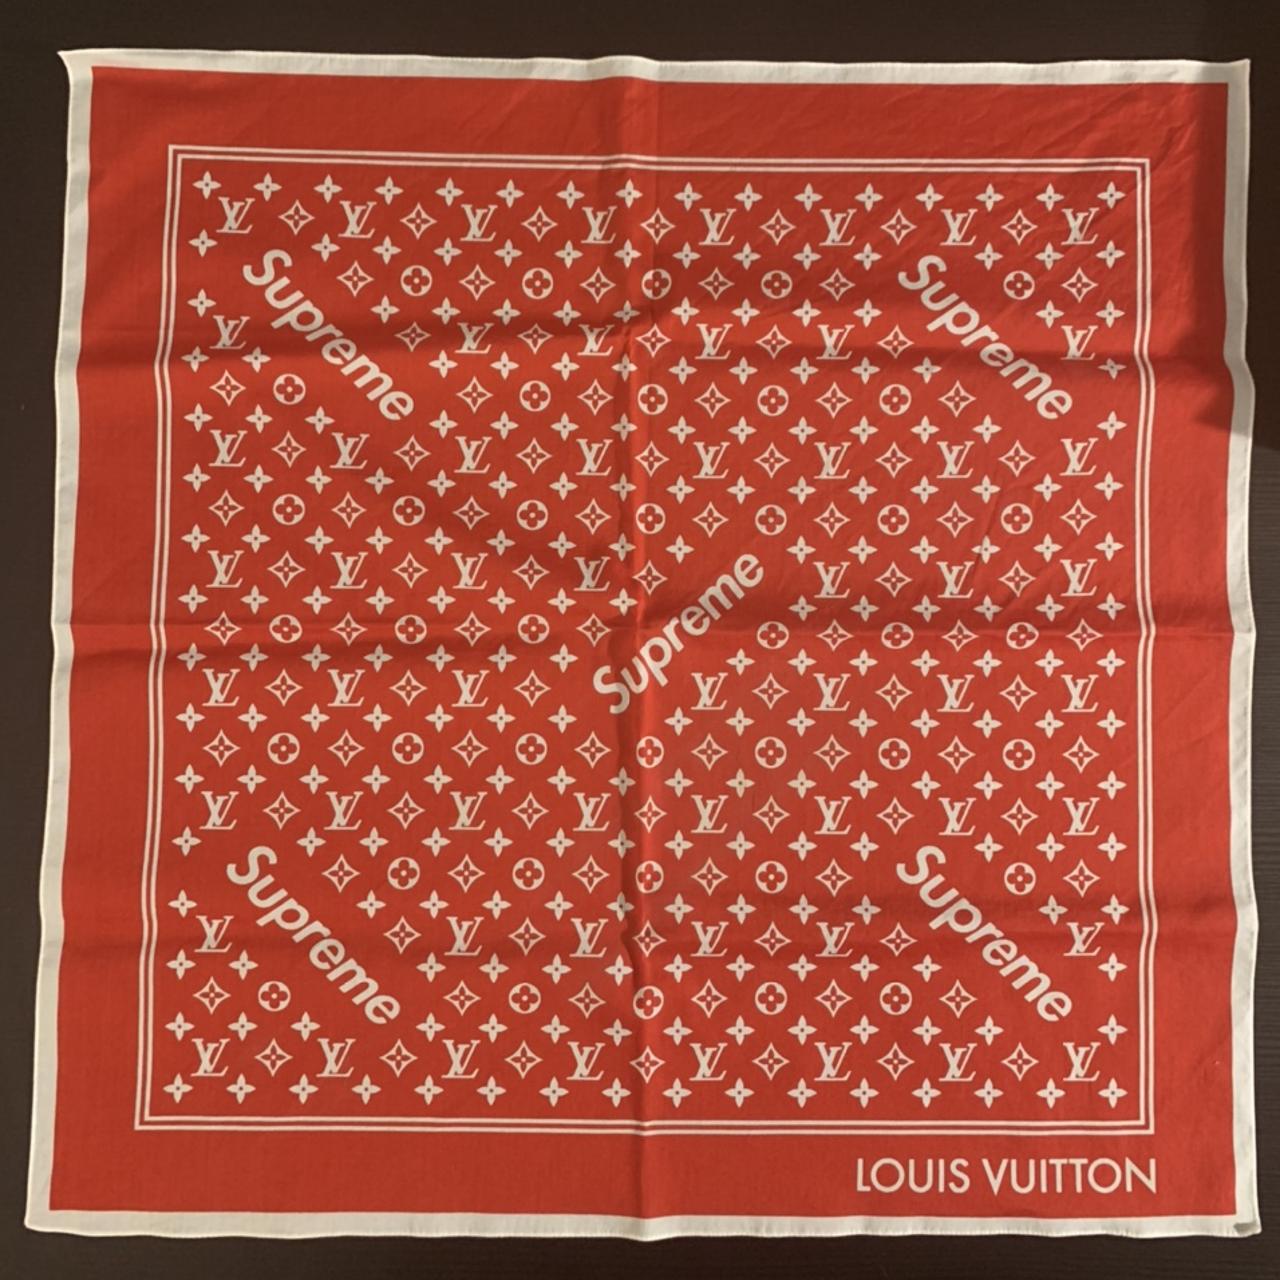 Louis Vuitton X Supreme Bandana Brown new, with box - Depop